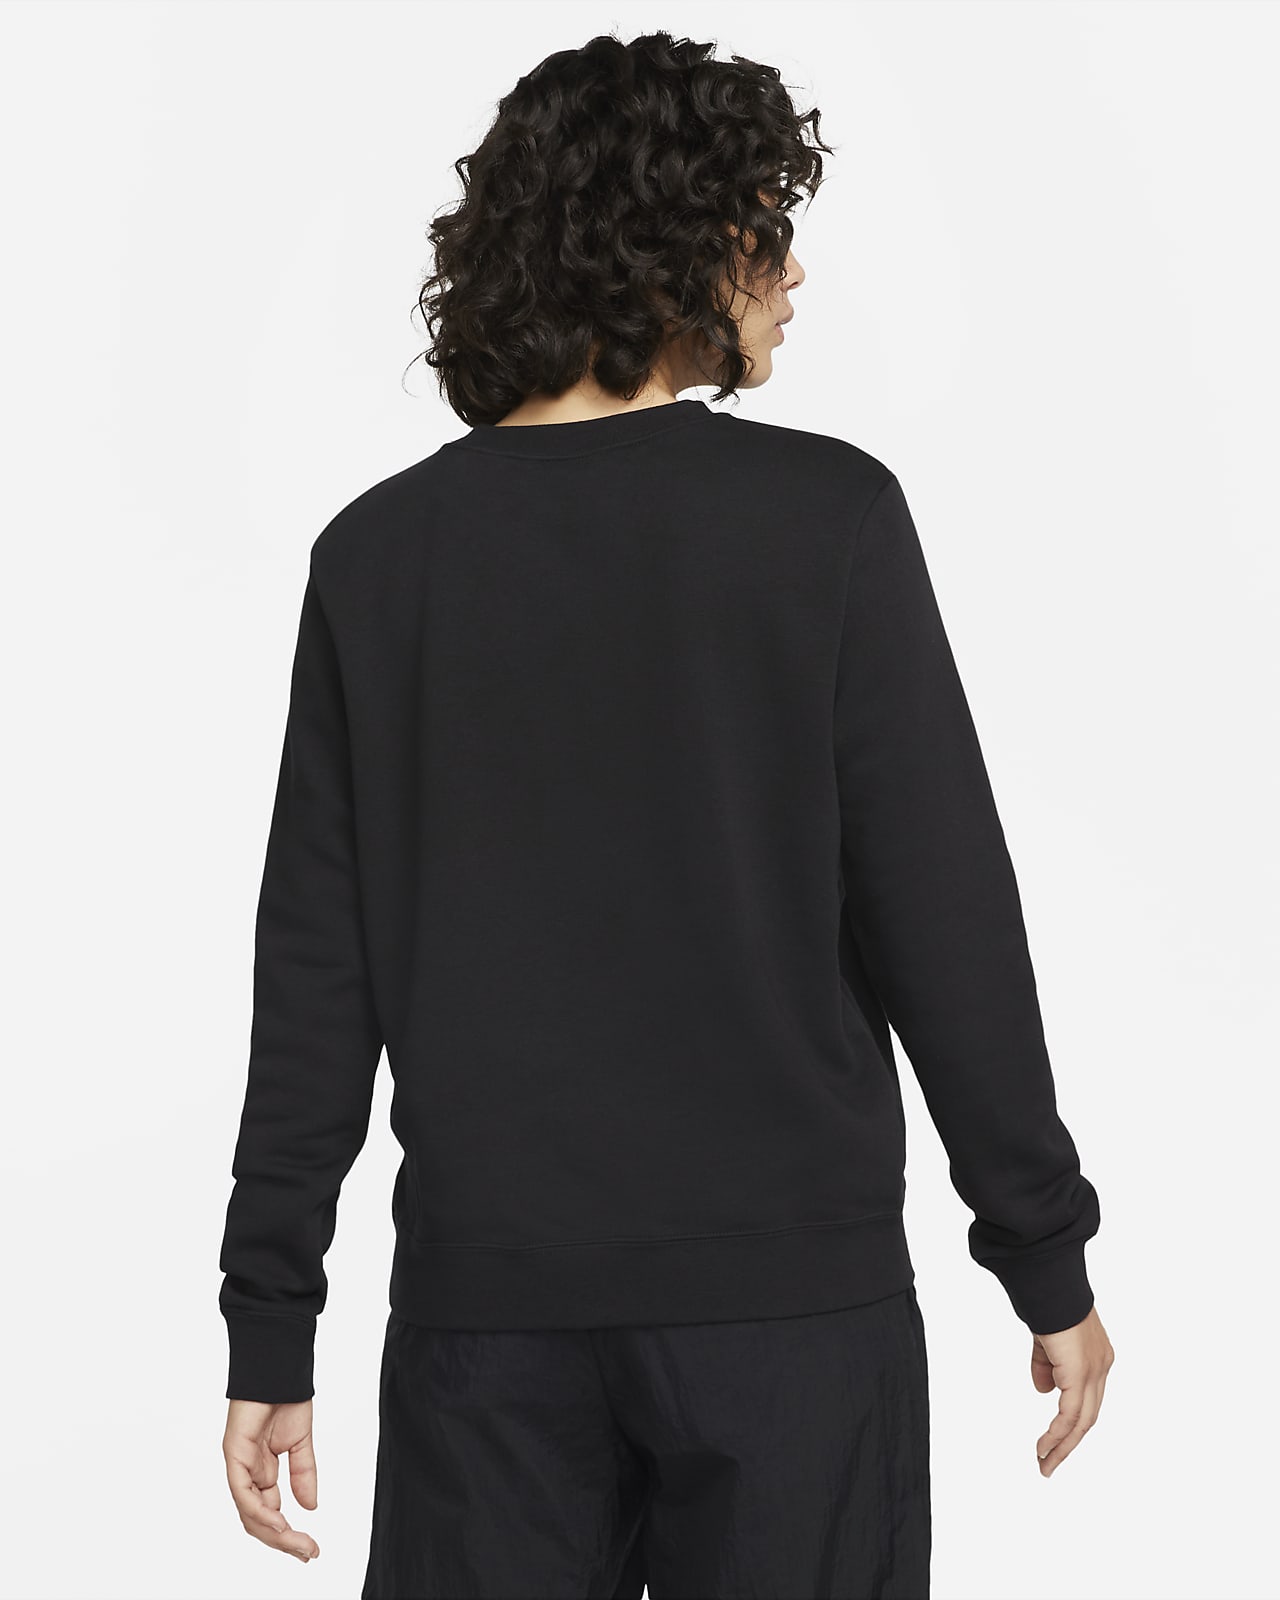 Nike Sportswear Sport Casual Sports Breathable Fleece Pullover 'Black' -  KICKS CREW